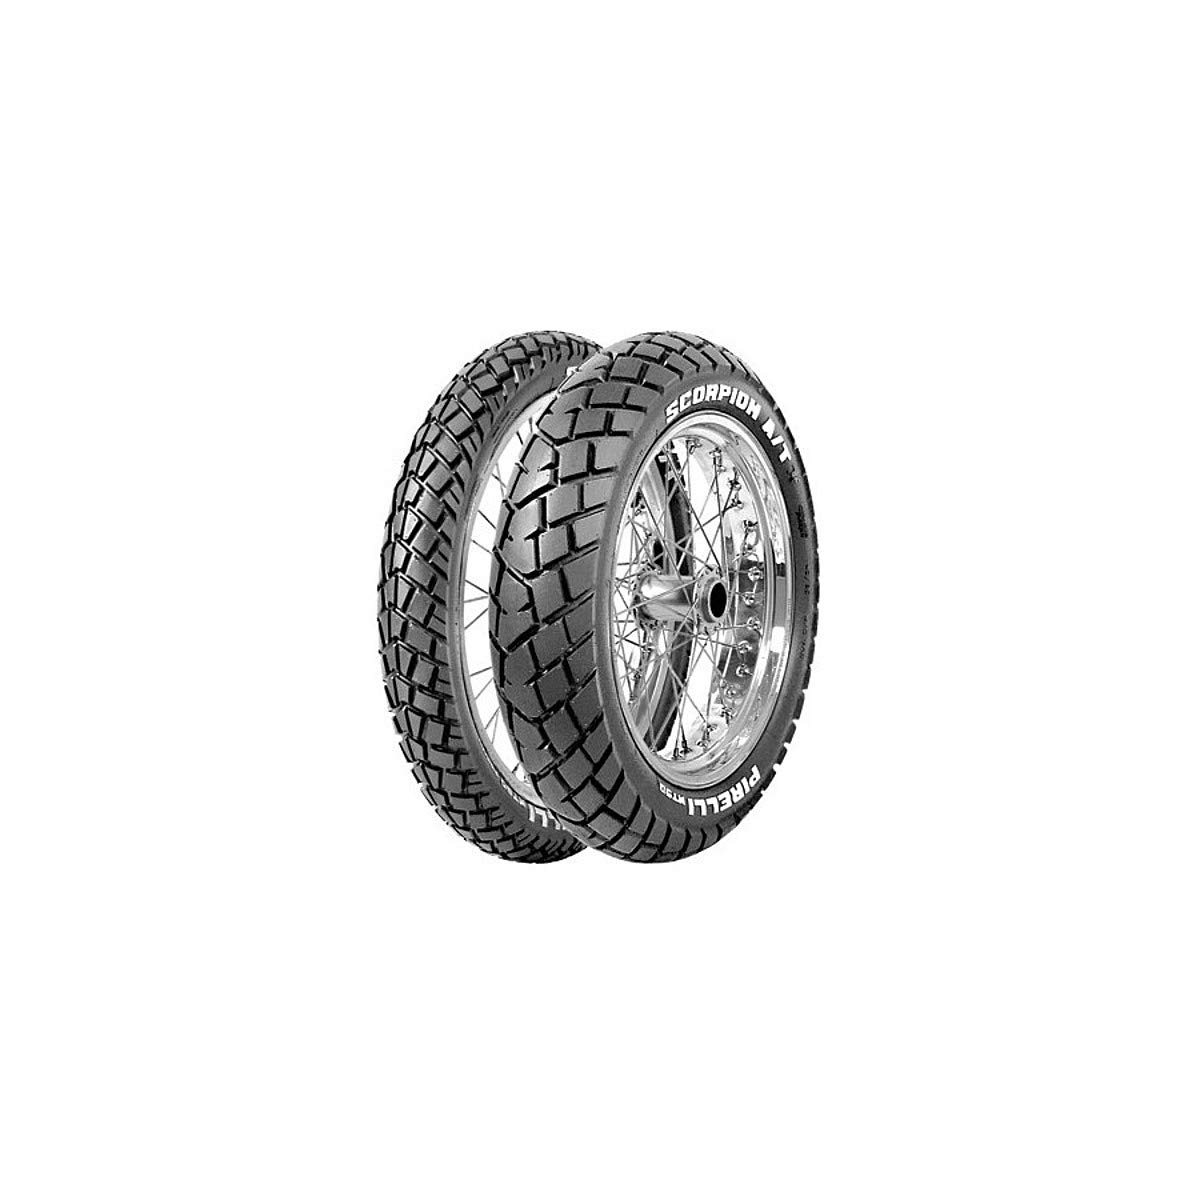 Motorradreifen 150/70 R18 70V Pirelli SCORPION™ MT 90 A/T TL REAR von Pirelli